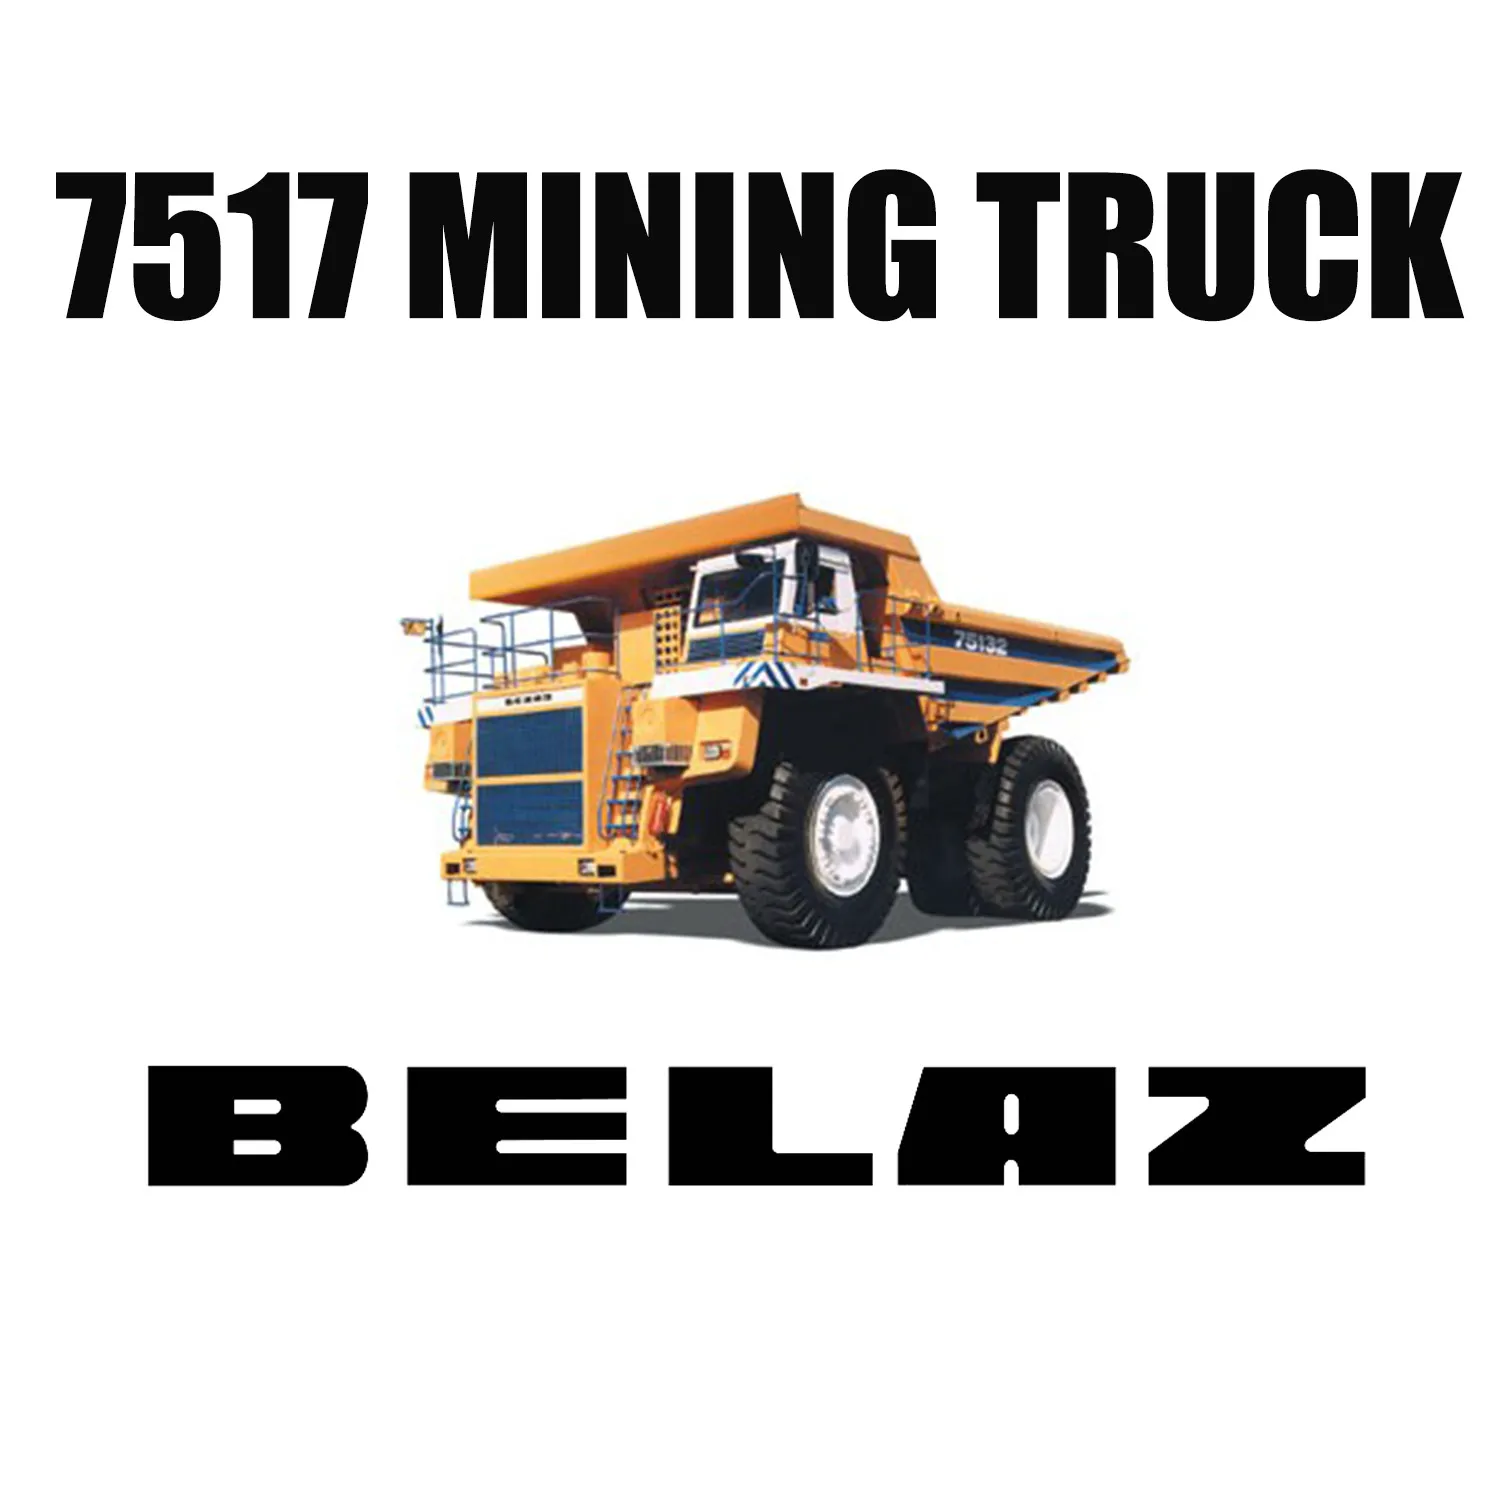 36.00R51 Pneumatici da miniera fuoristrada montati su BELAZ-7517 per miniera di carbone